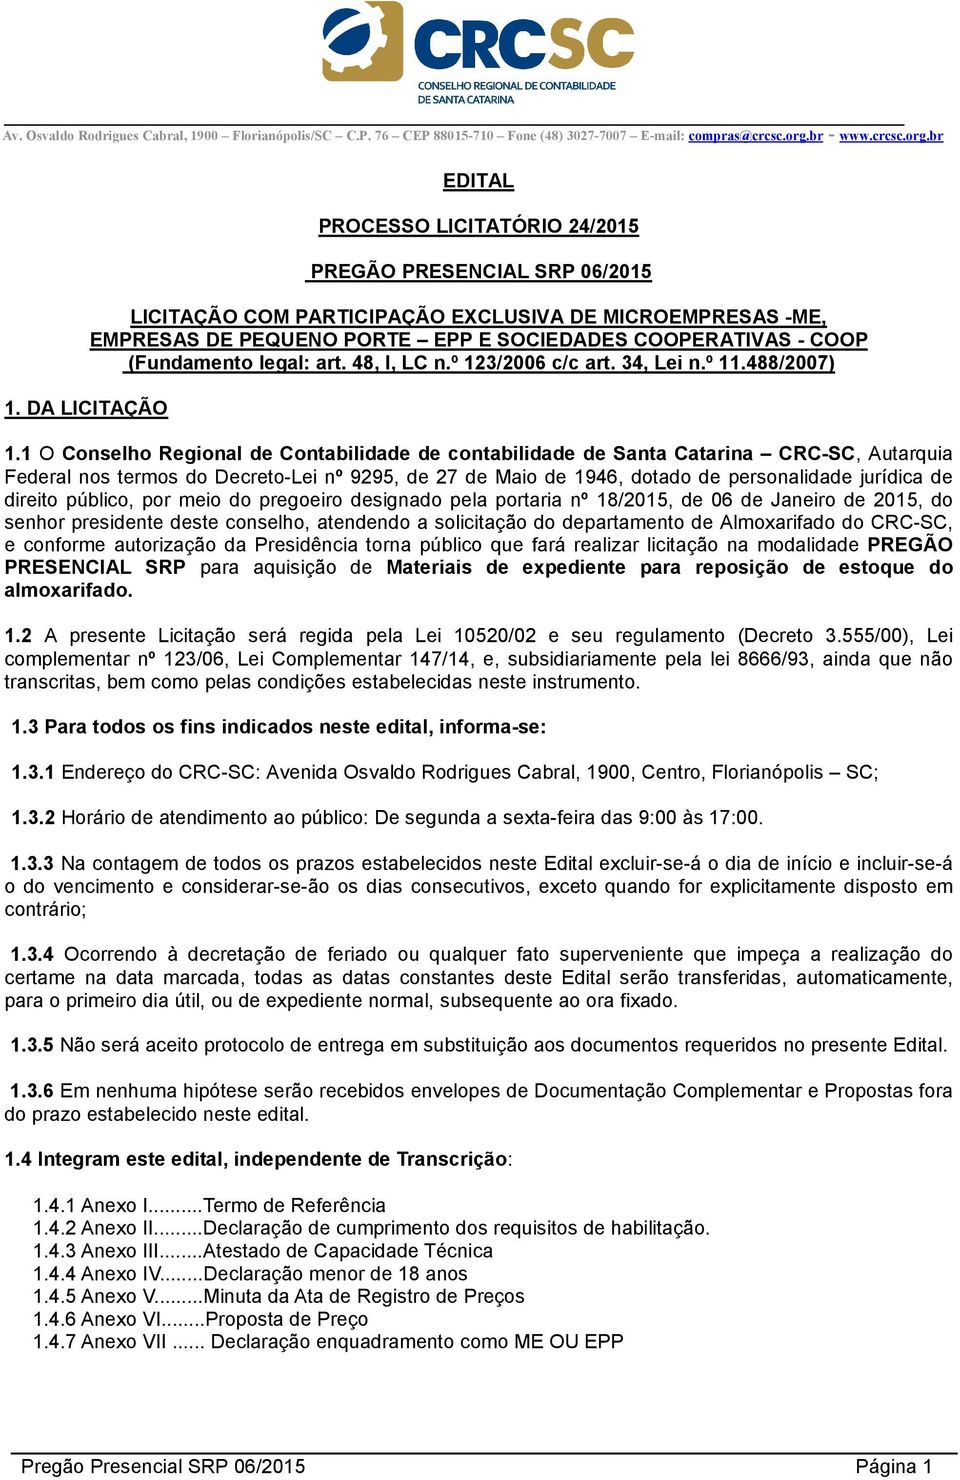 1 O Conselho Regional de Contabilidade de contabilidade de Santa Catarina CRC-SC, Autarquia Federal nos termos do Decreto-Lei nº 9295, de 27 de Maio de 1946, dotado de personalidade jurídica de